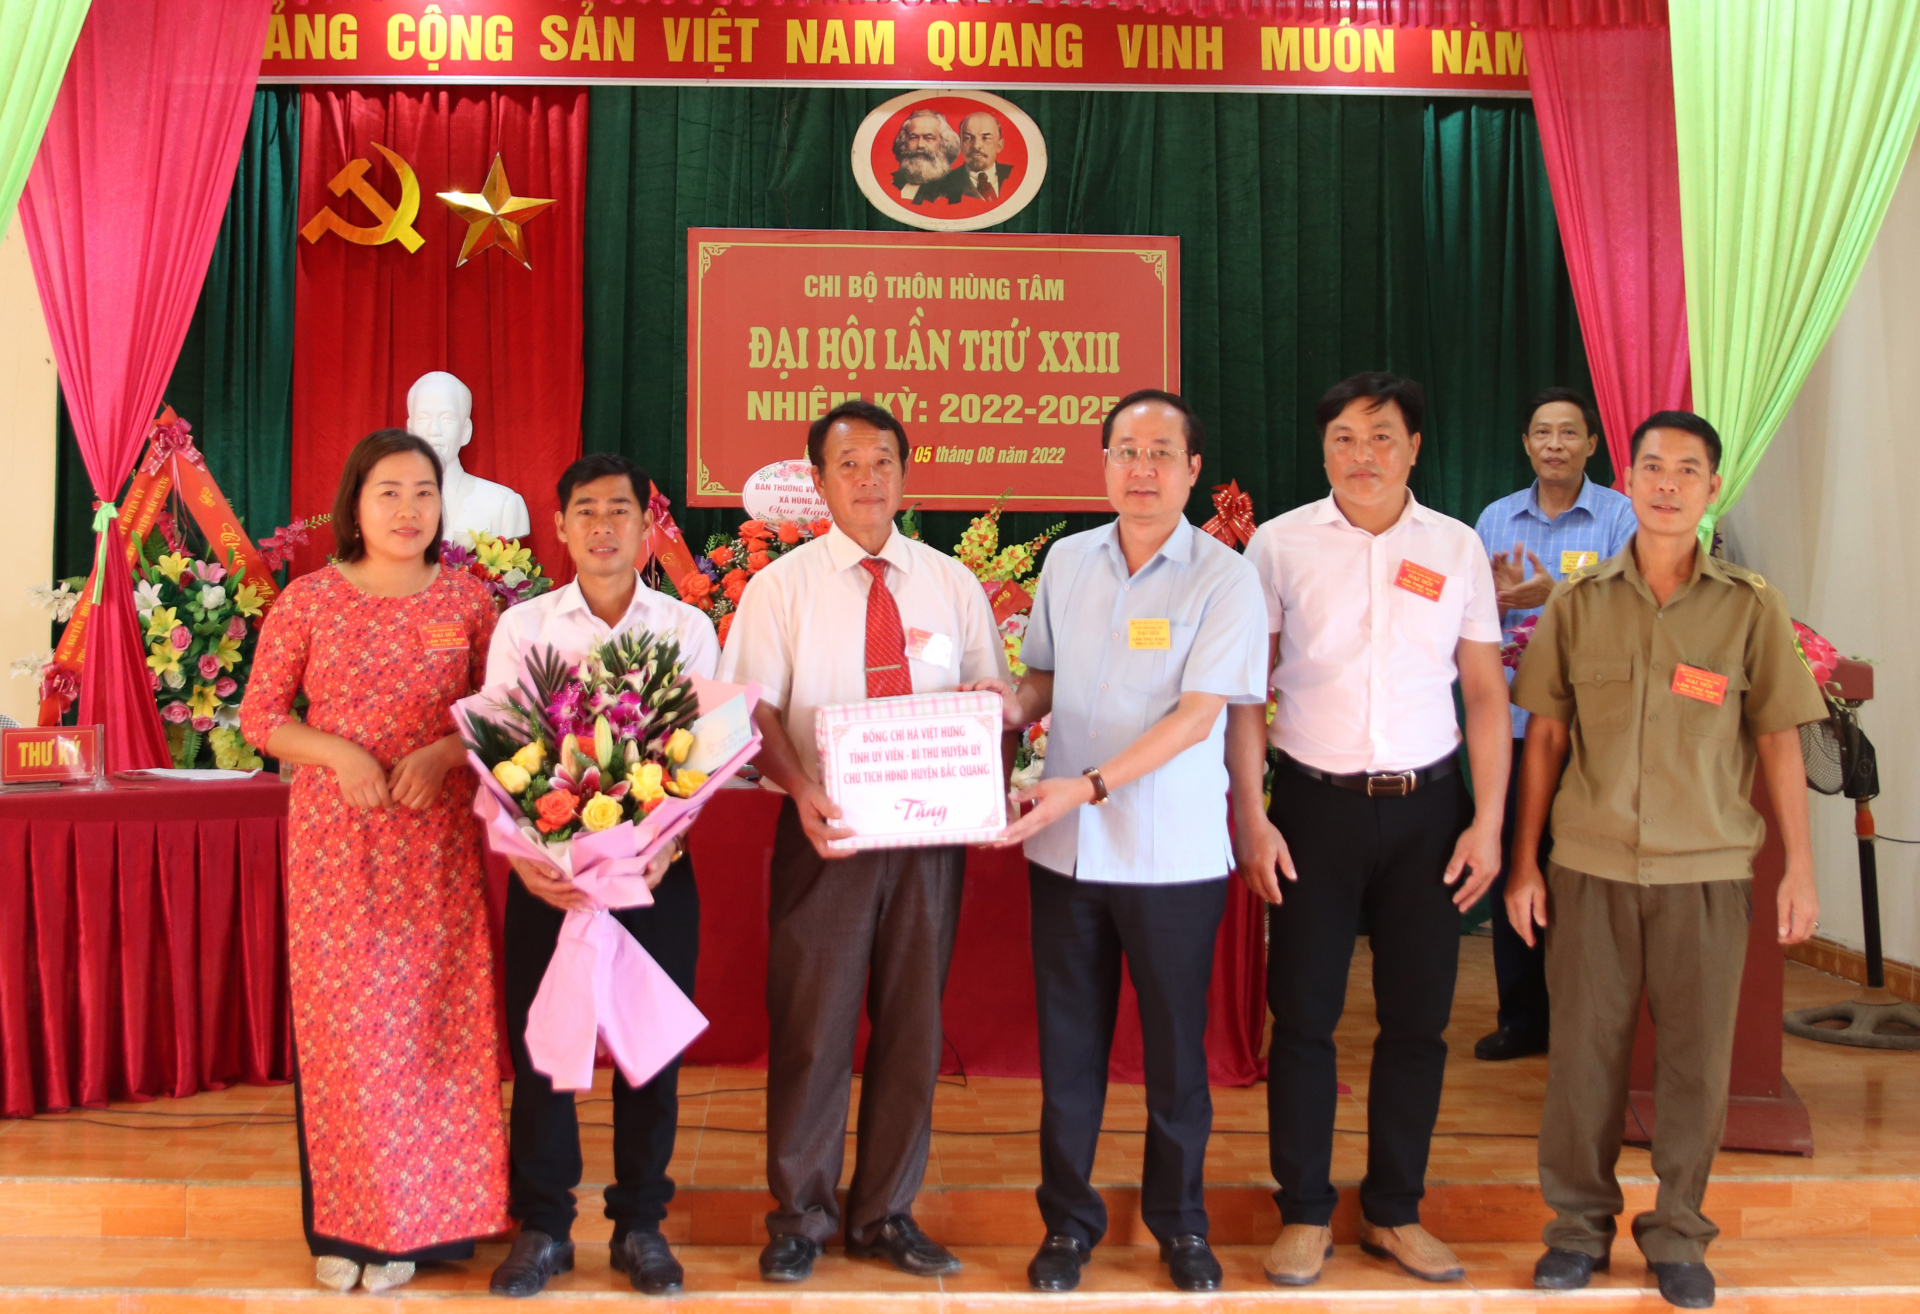 Lãnh đạo huyện Bắc Quang tặng hoa và quà chúc mừng Chi ủy Chi bộ thôn Hùng Tâm khóa mới. 